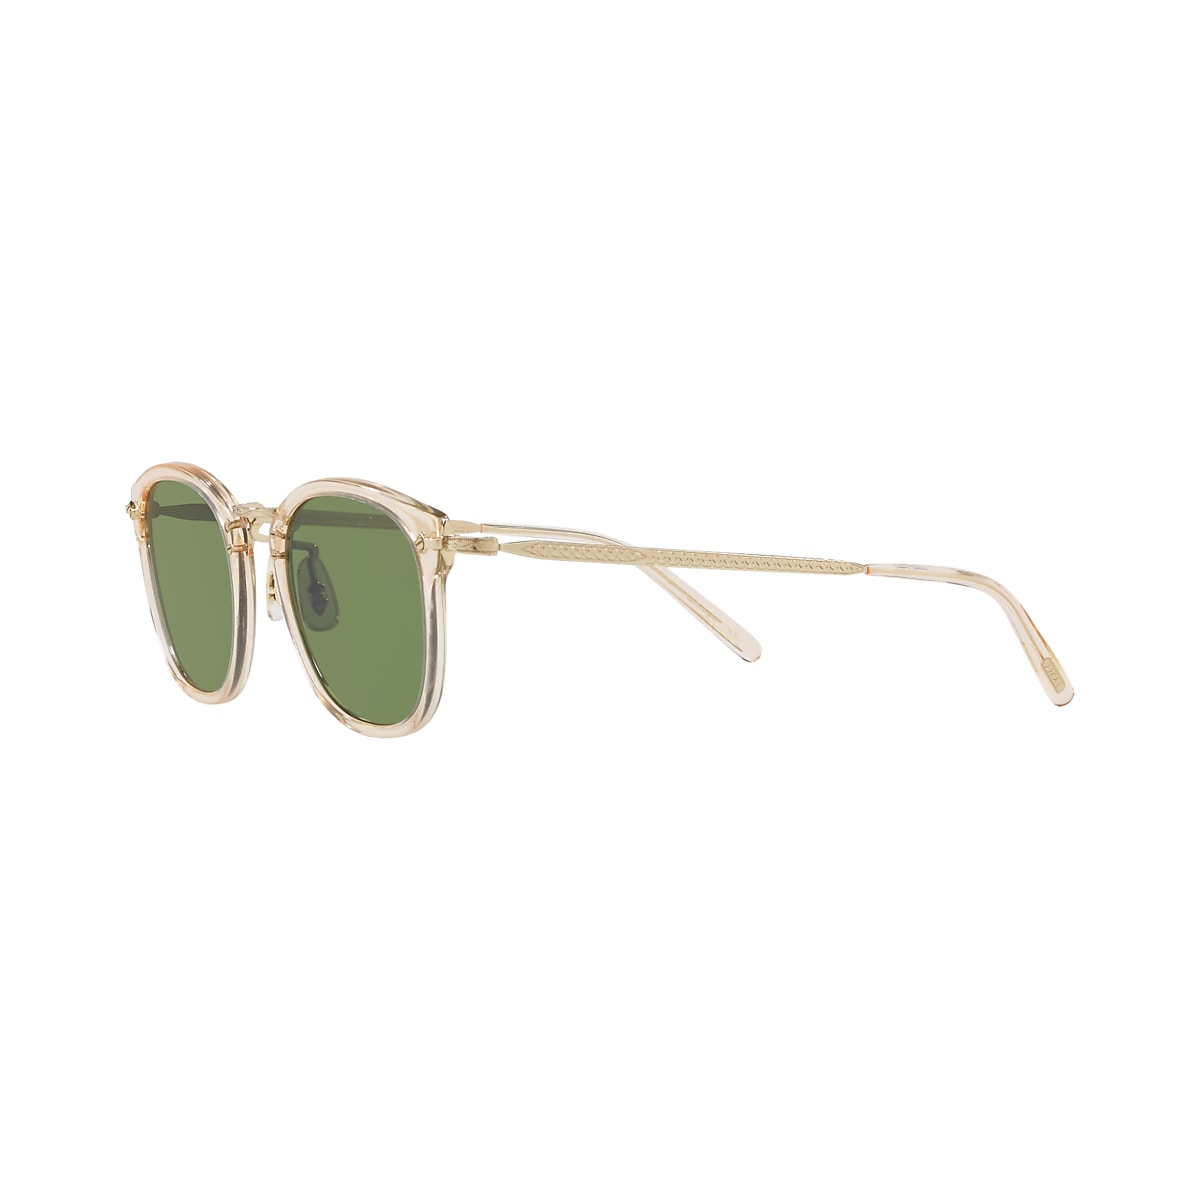 Sunglasses OV5350S - Buff-Gold - Green - アセテート | Oliver 